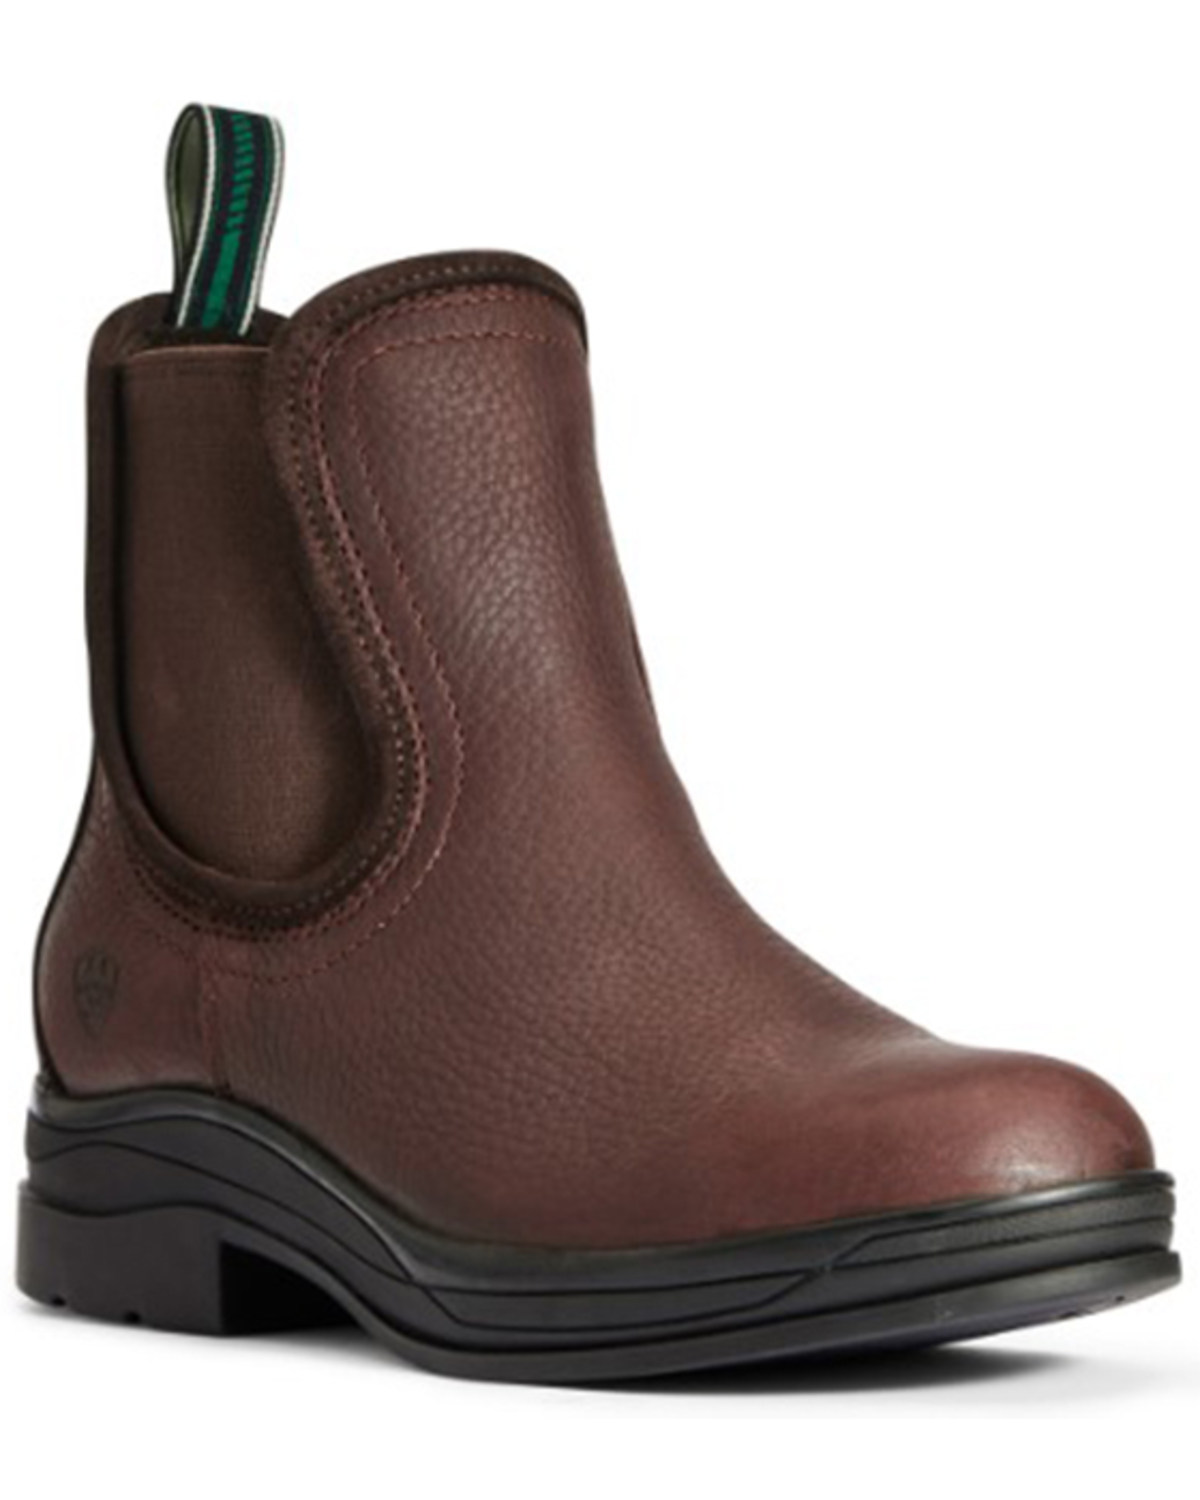 Ariat Women's Keswick Waterproof Work Boots - Round Toe